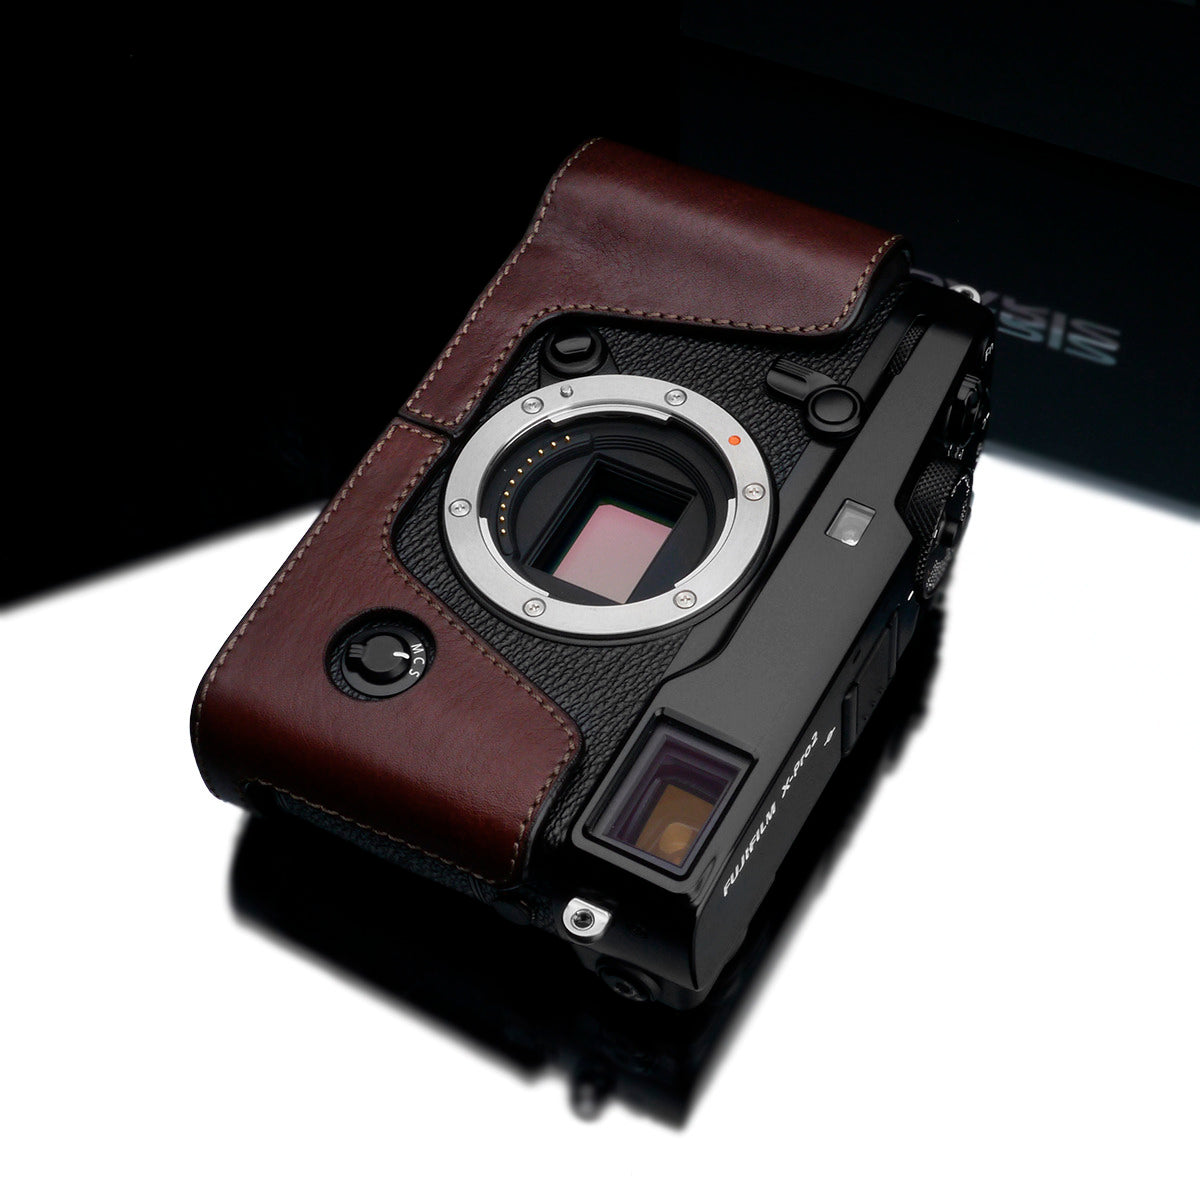 Gariz XS-CHXP2BR Brown Leather Camera Half Case for Fujifilm Fuji X-Pro2